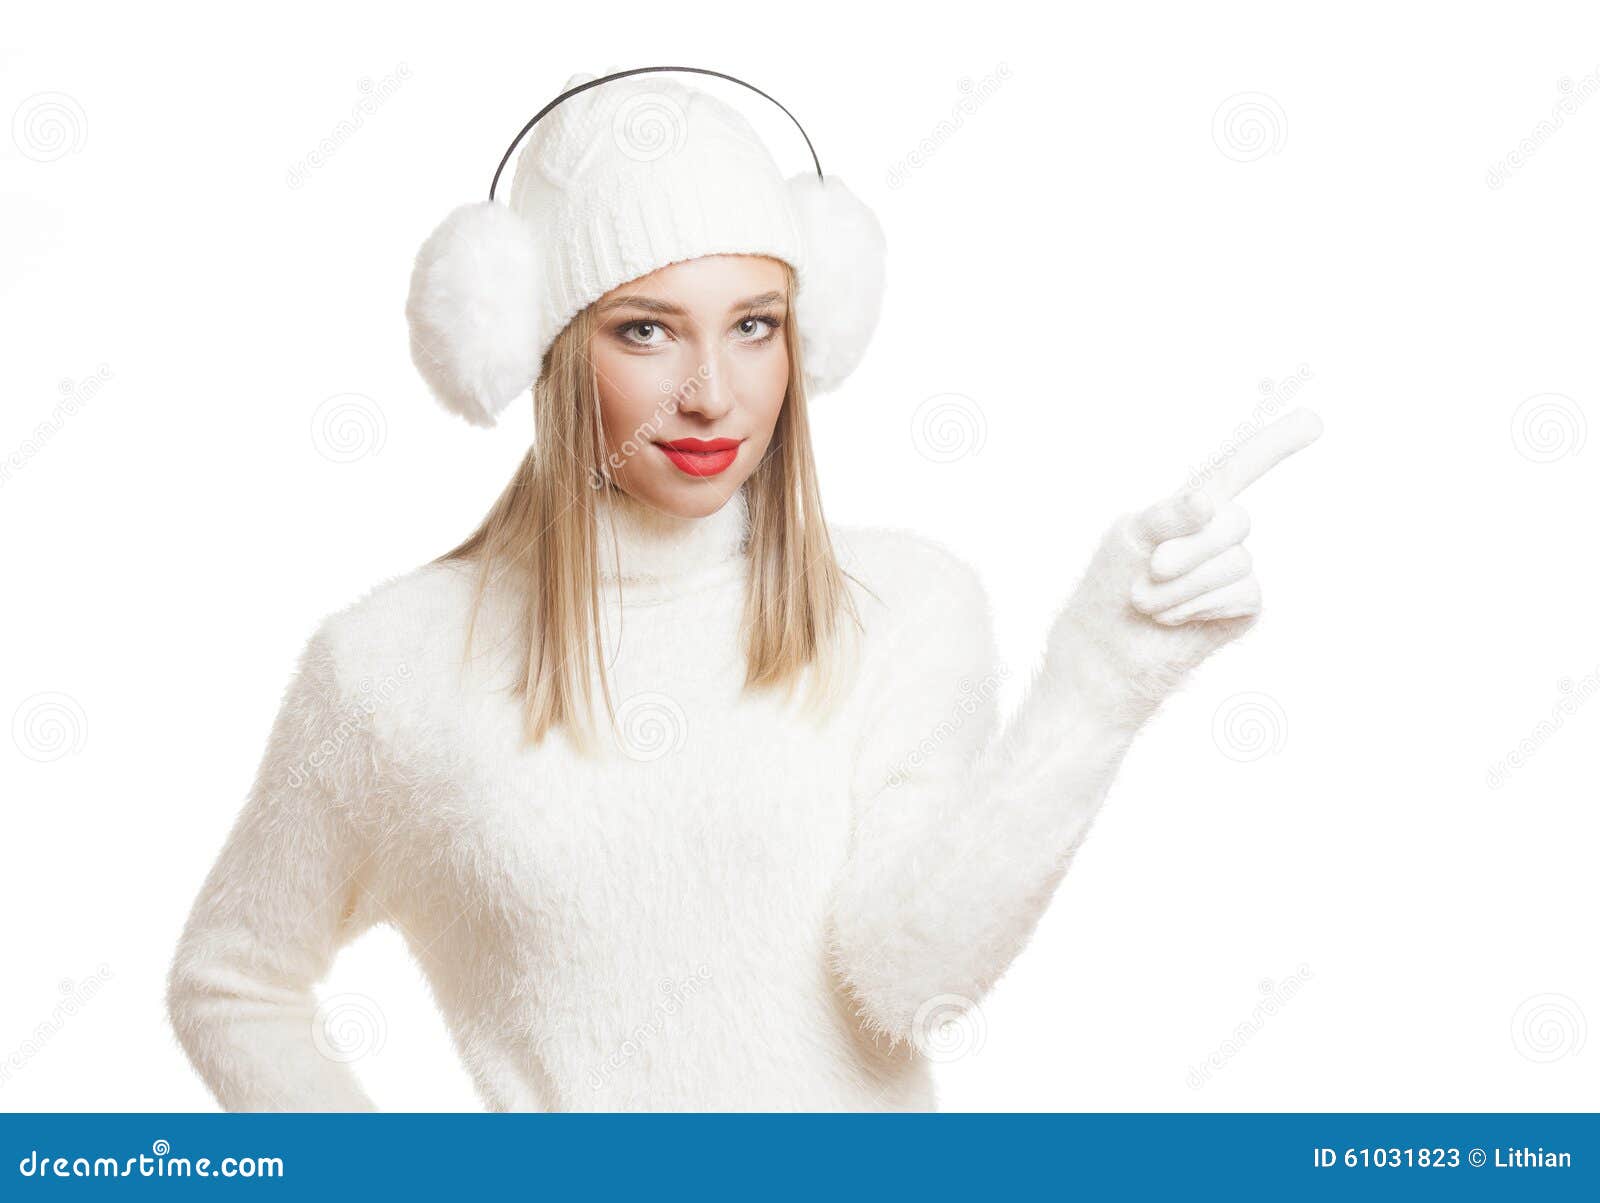 Femme blonde de mode d'hiver. Portrait d'une jeune femme blonde magnifique de mode d'hiver